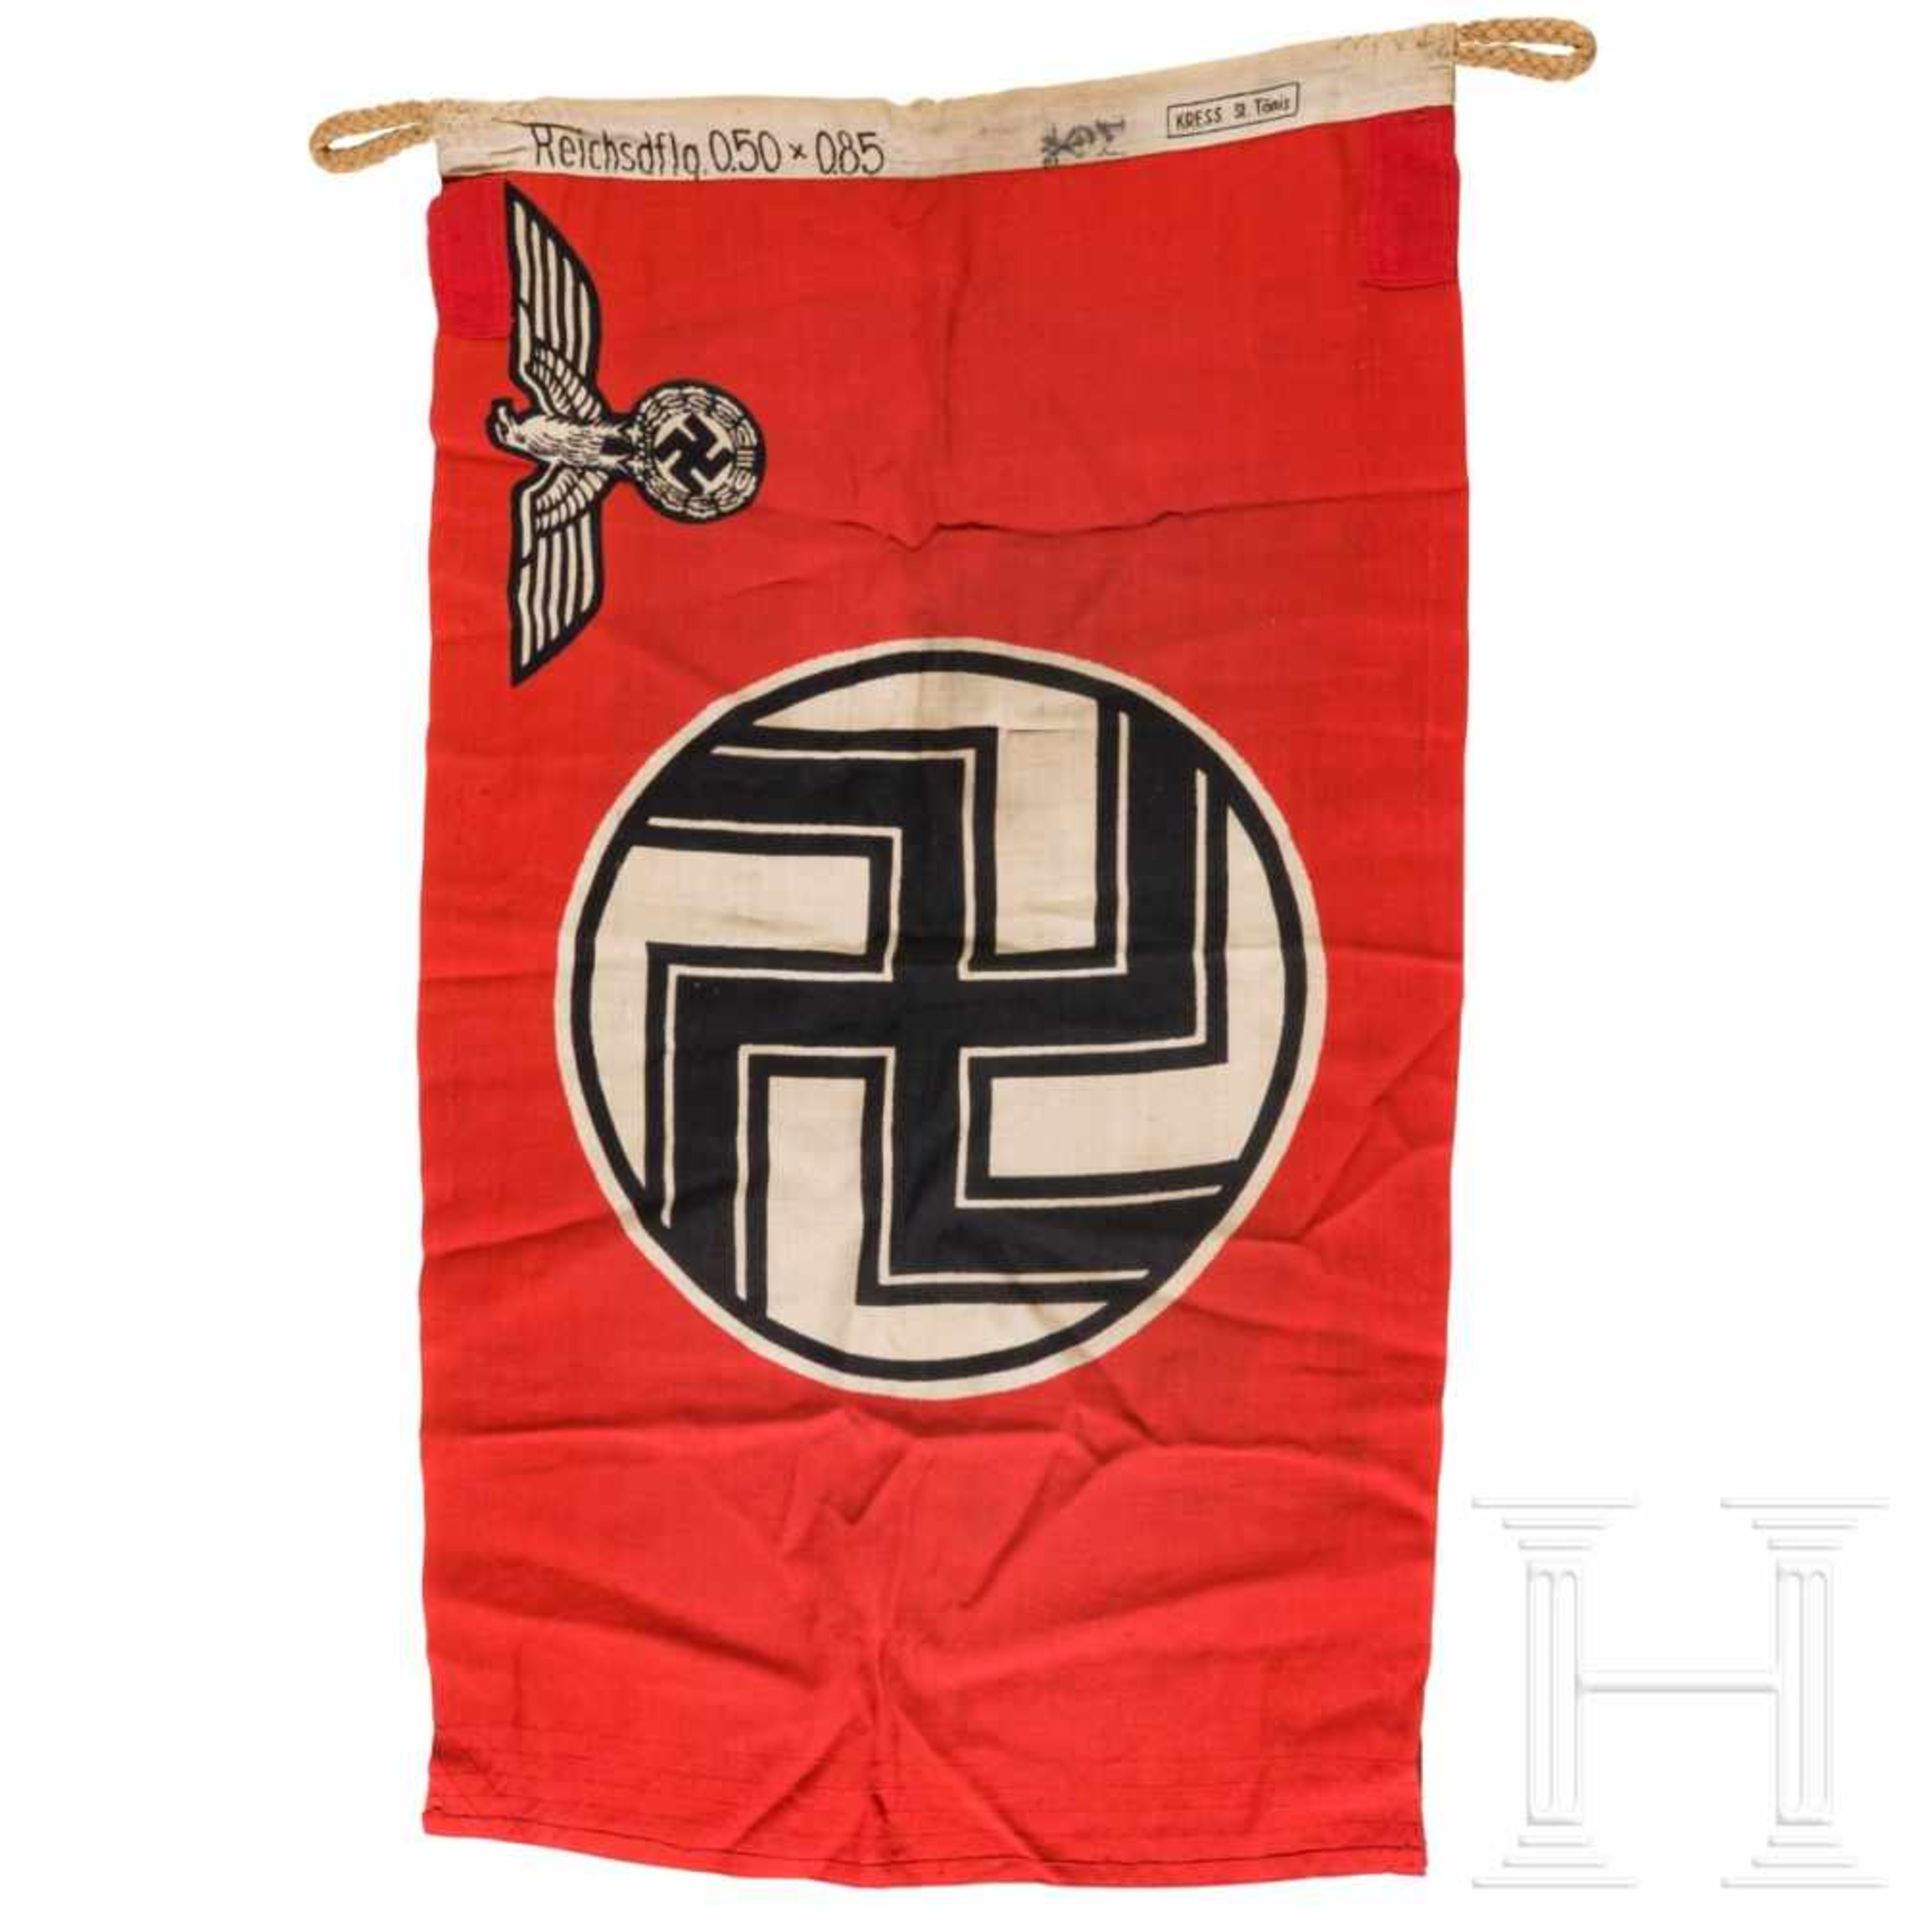 Reichsdienstflagge mit Herstellerstempelung und Abnahmestempel der Kriegsmarine - Bild 2 aus 6